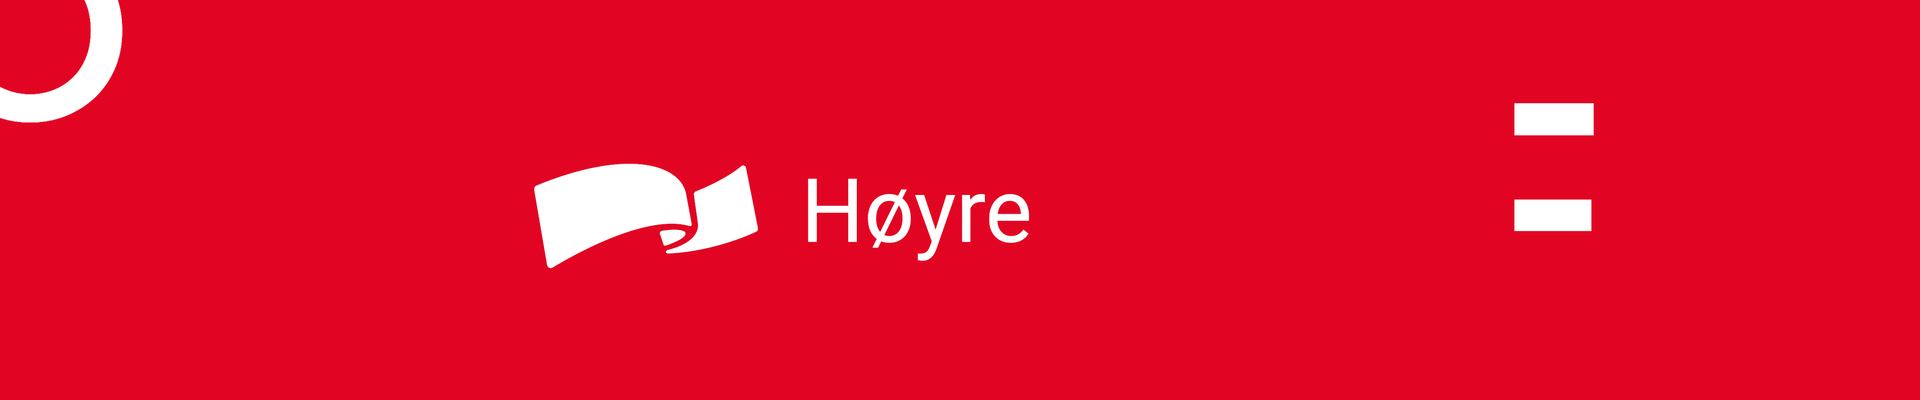 Høyre